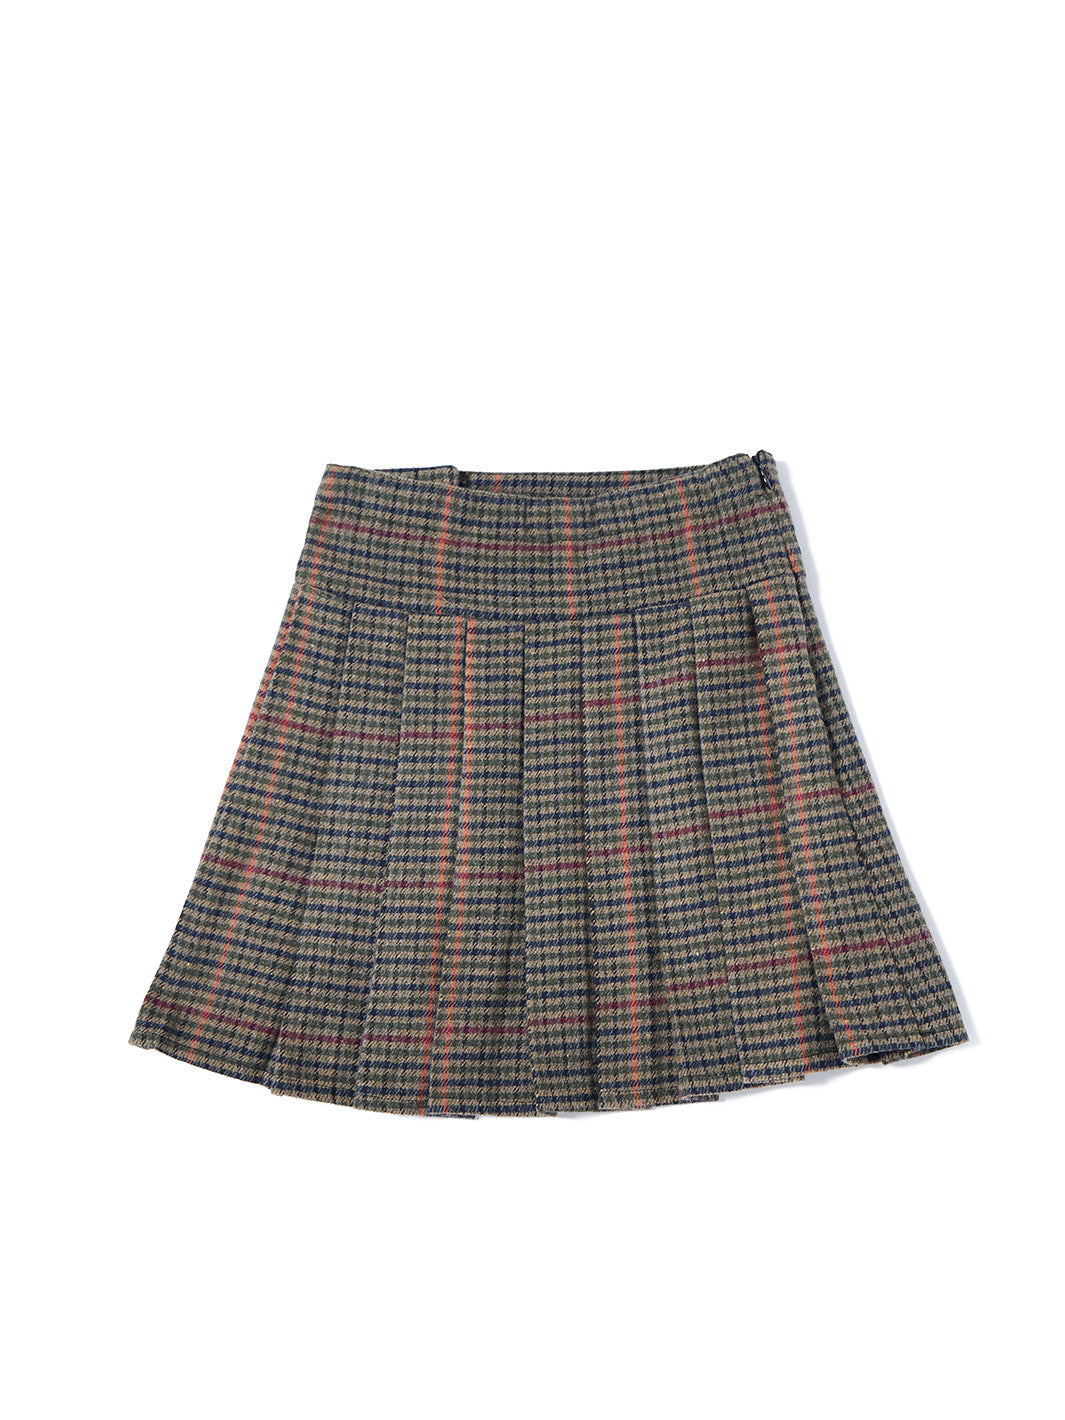 Plaid Buckle Skirt